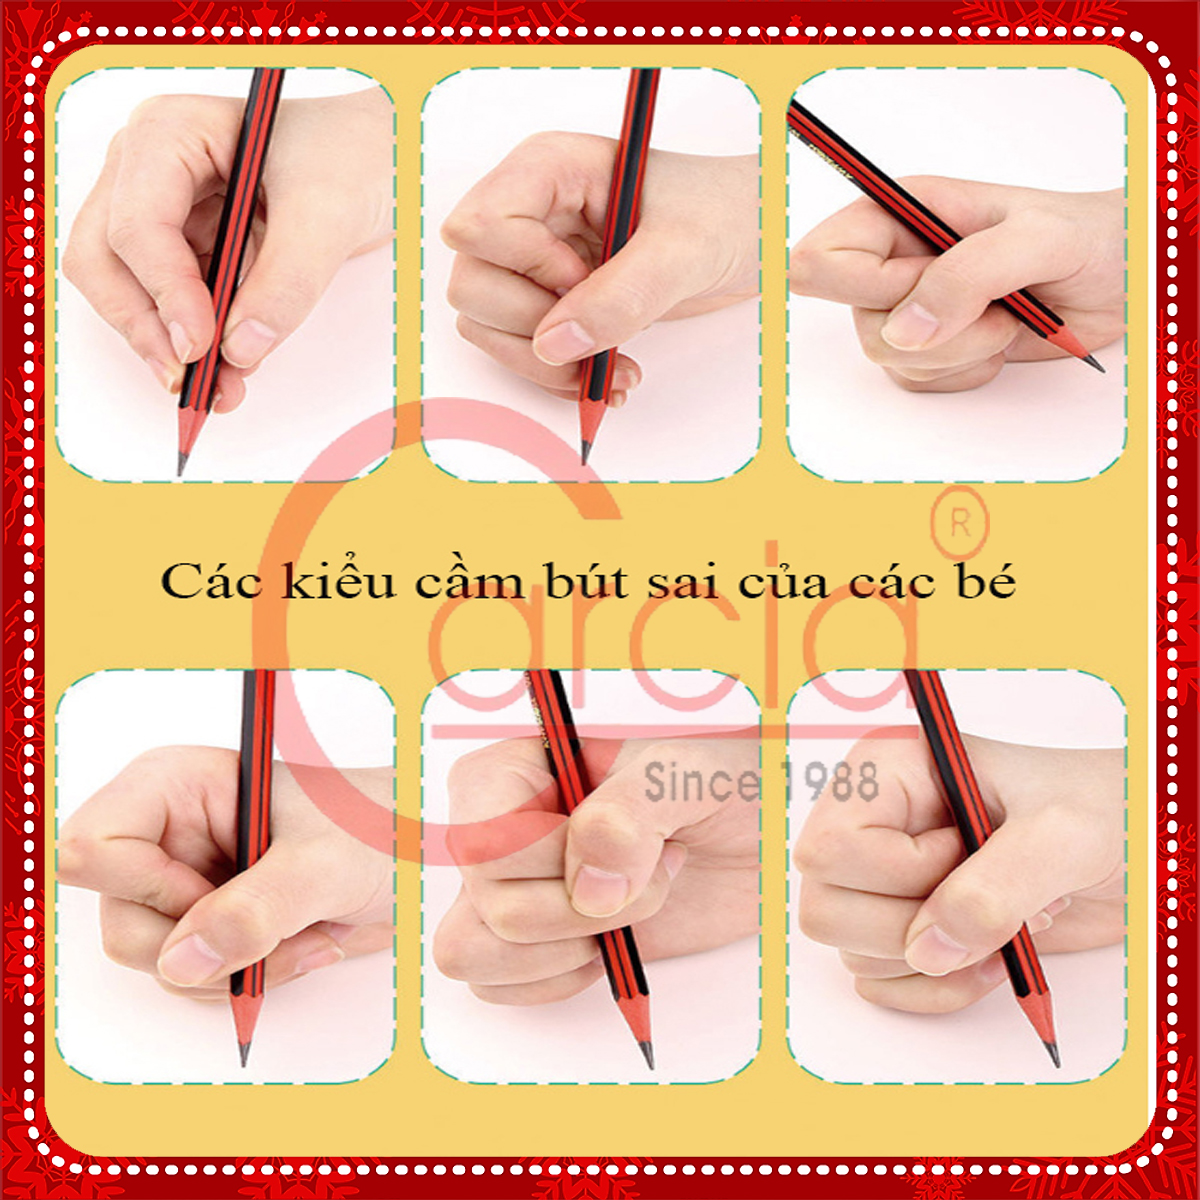 Dụng cụ hỗ trợ cầm nắm bút cho học sinh - Bộ 4 chiếc tương ứng 4 giai đoạn hỗ trợ bé cầm nắm bút đúng tư thế - Hàng chính hàng